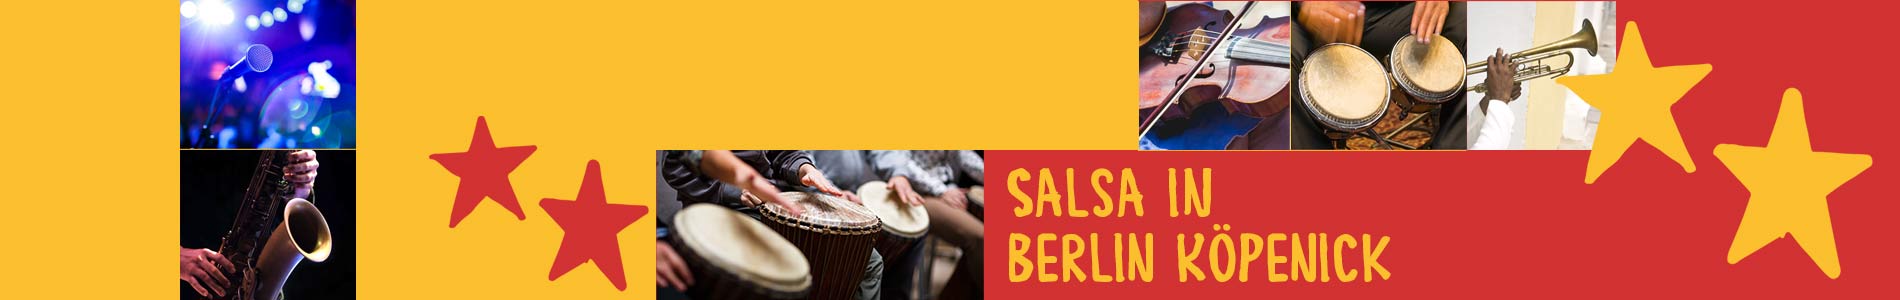 Salsa in Berlin Köpenick – Salsa lernen und tanzen, Tanzkurse, Partys, Veranstaltungen